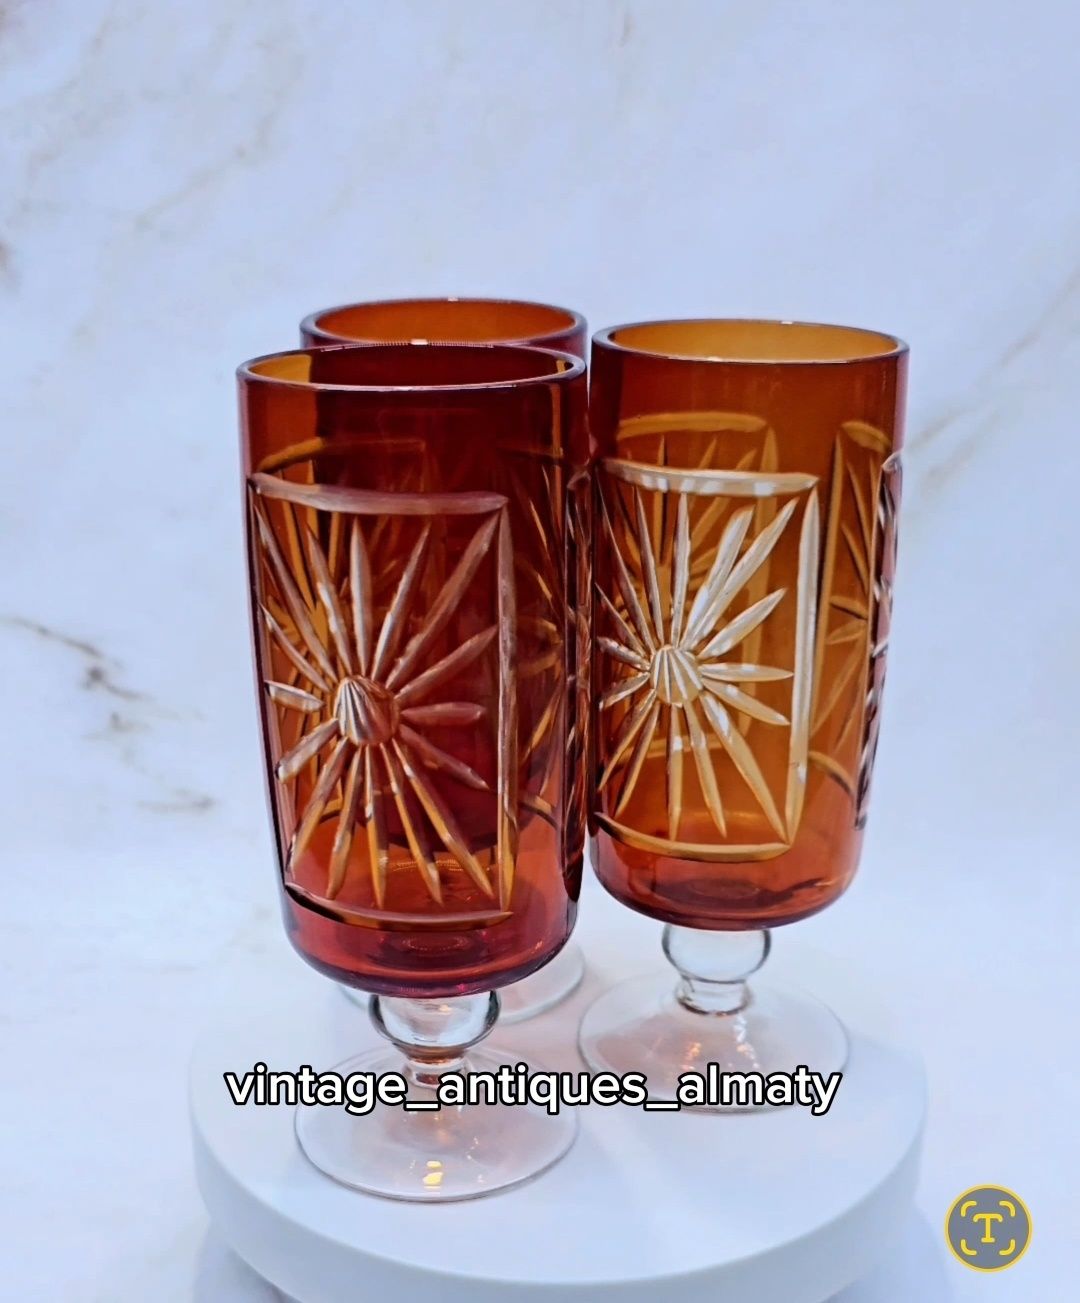 Винтажная посуда, вазы советского периода